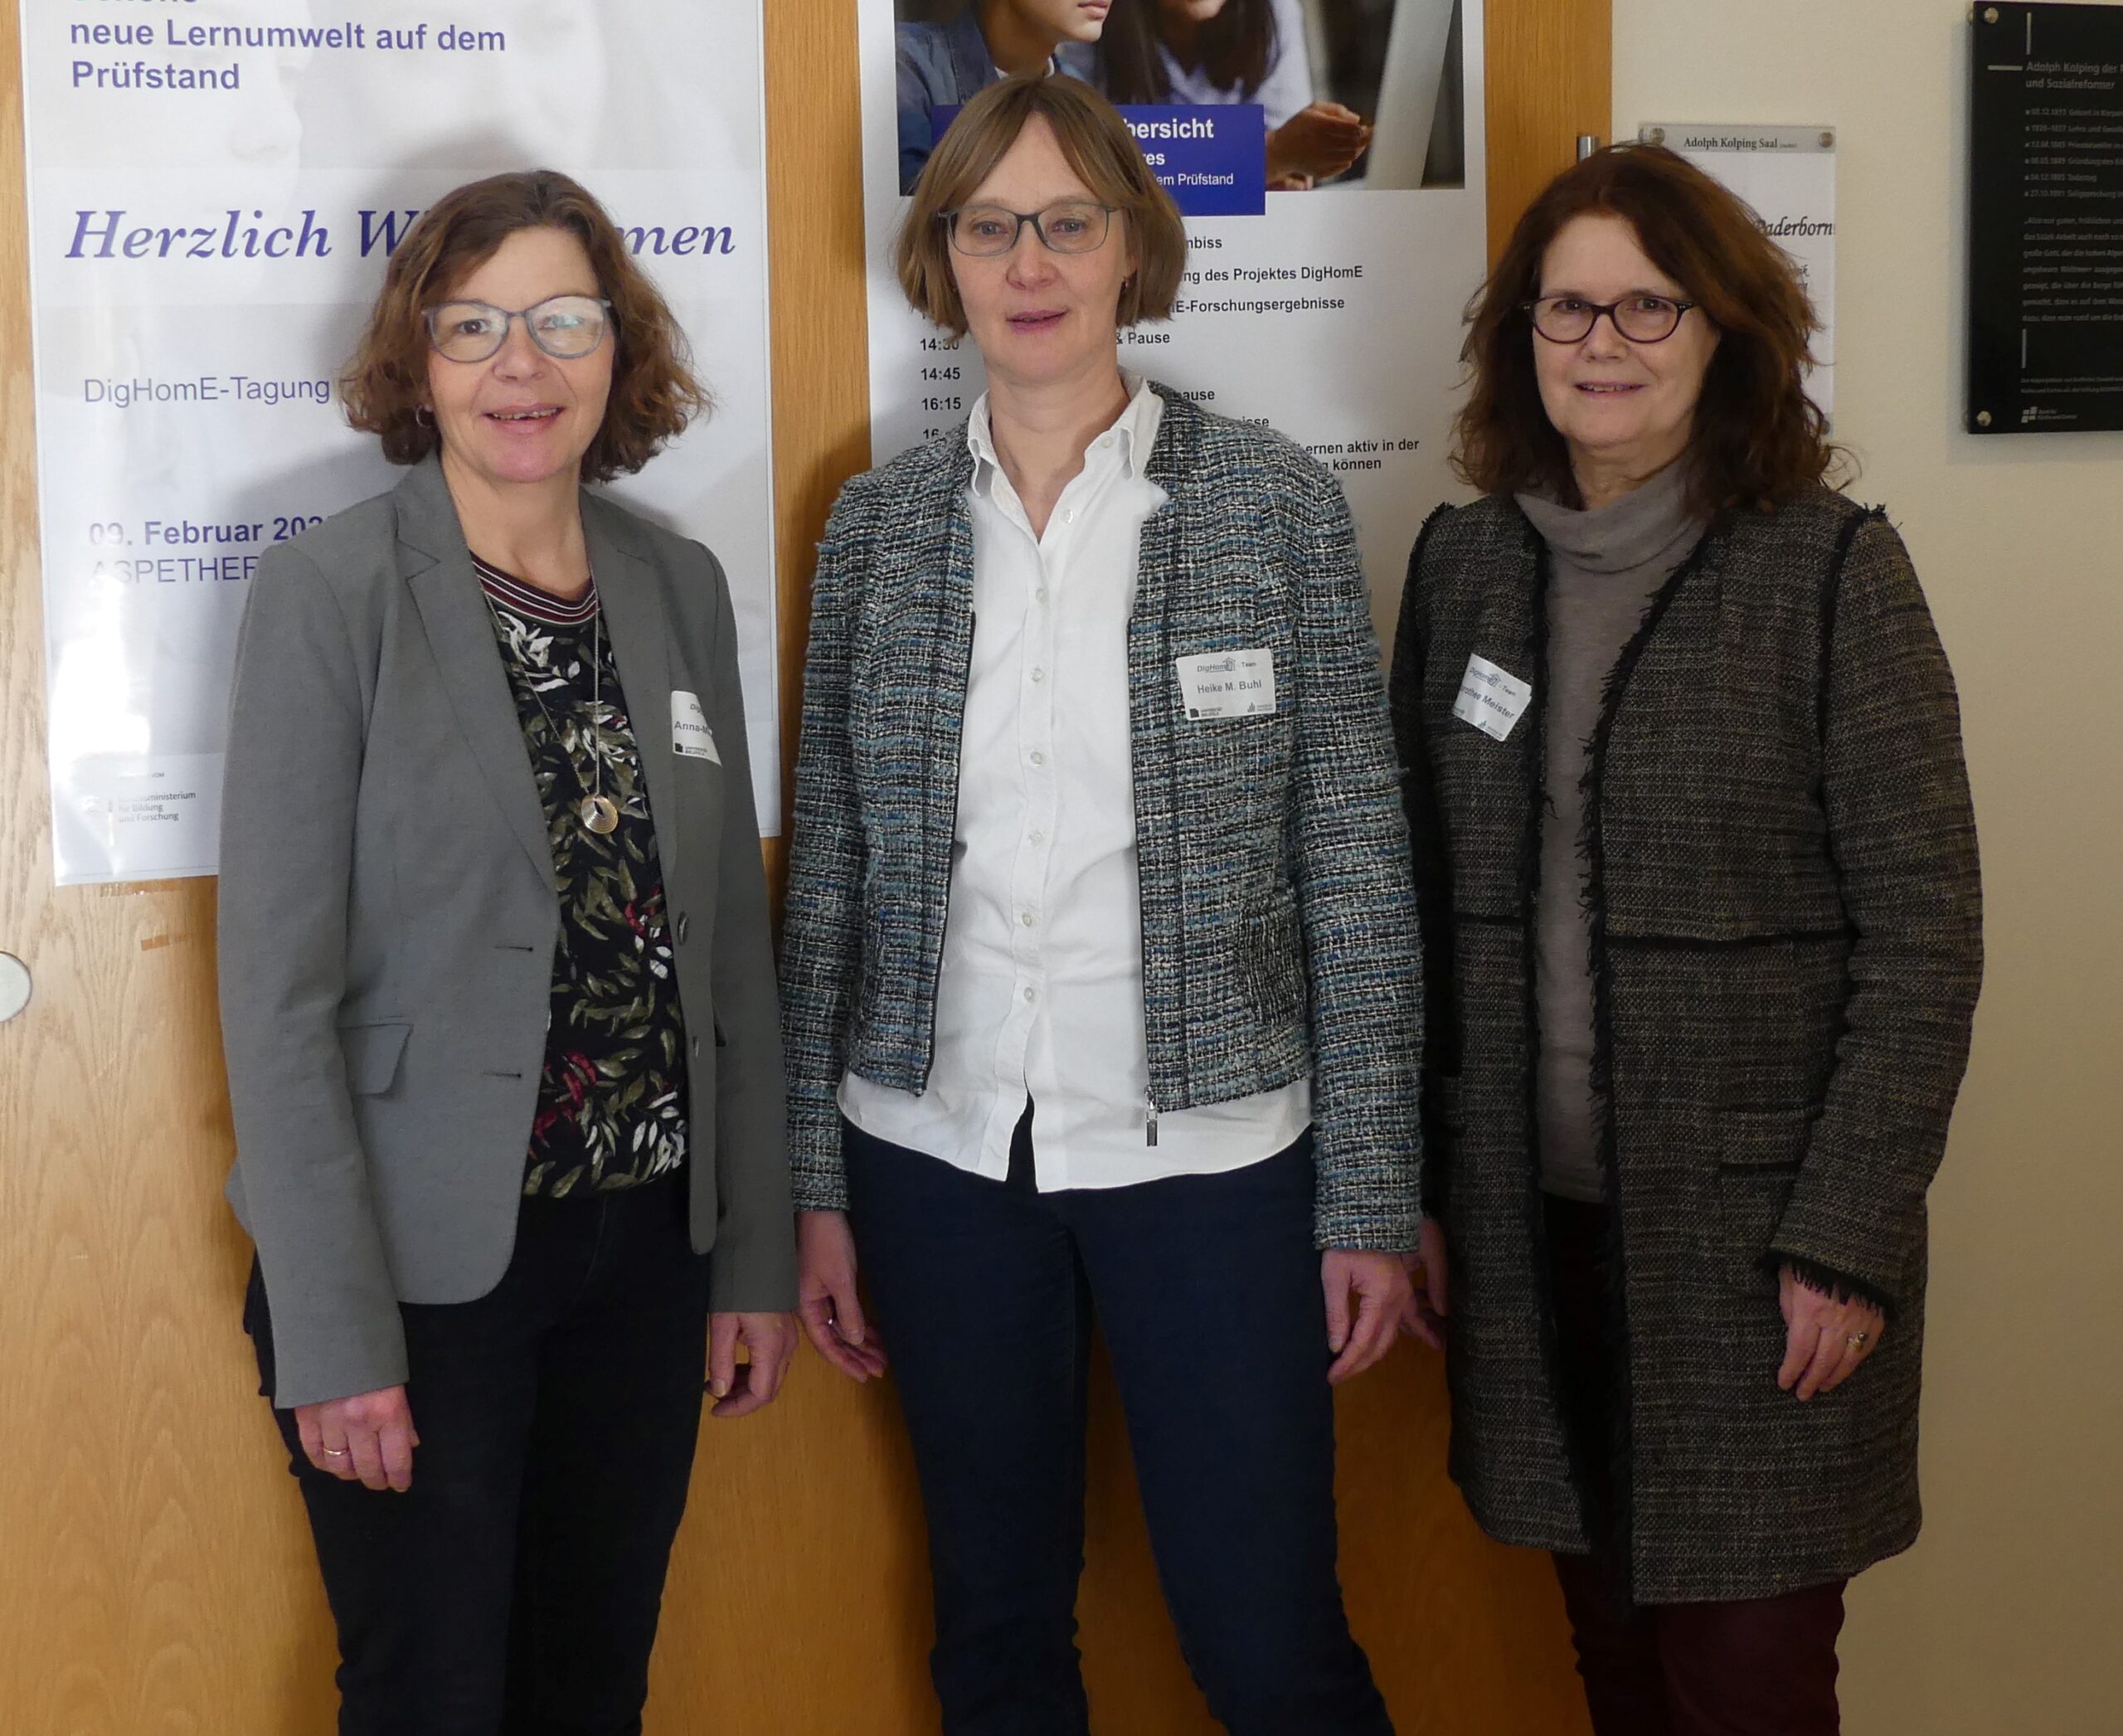 Professorin Dr. Anna-Maria Kamin, Professorin Dr. Heike M. Buhl und Professorin Dr. Dorothee M. Meister haben den Einsatz digitaler Medien untersucht.